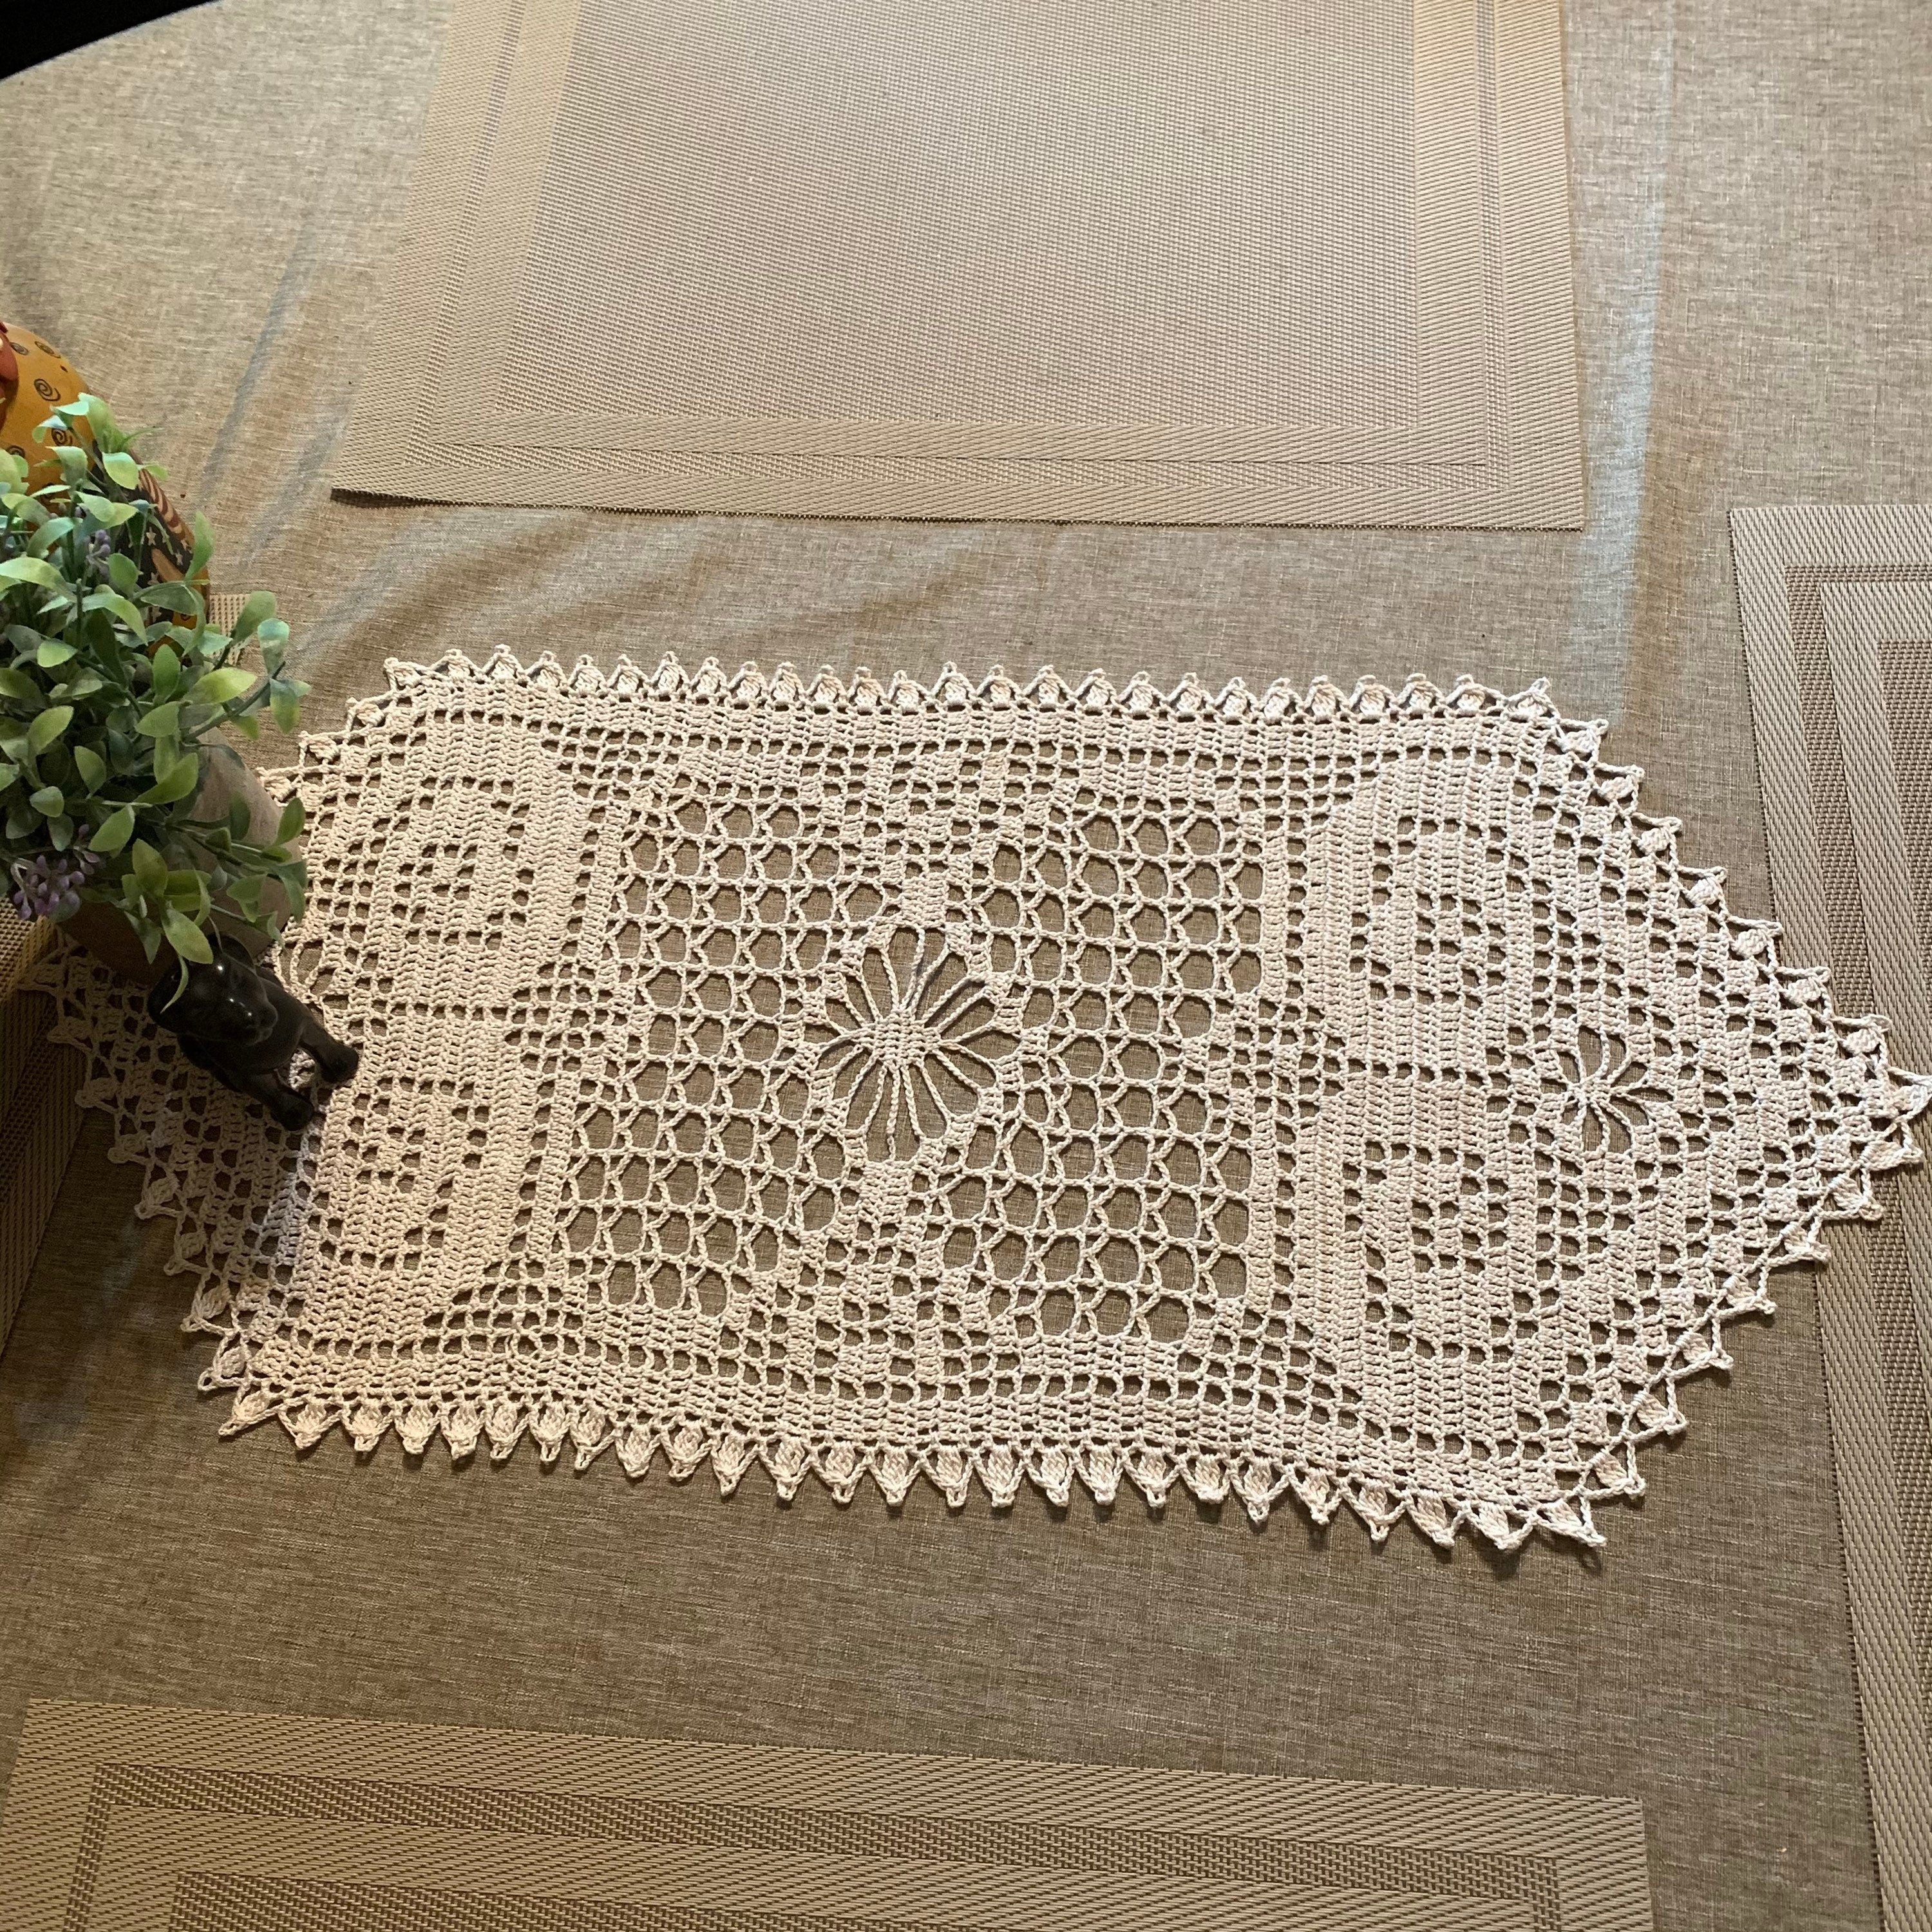 Crocheted Table Runner-Crocheted Doily-24”x12” Oblong Doily